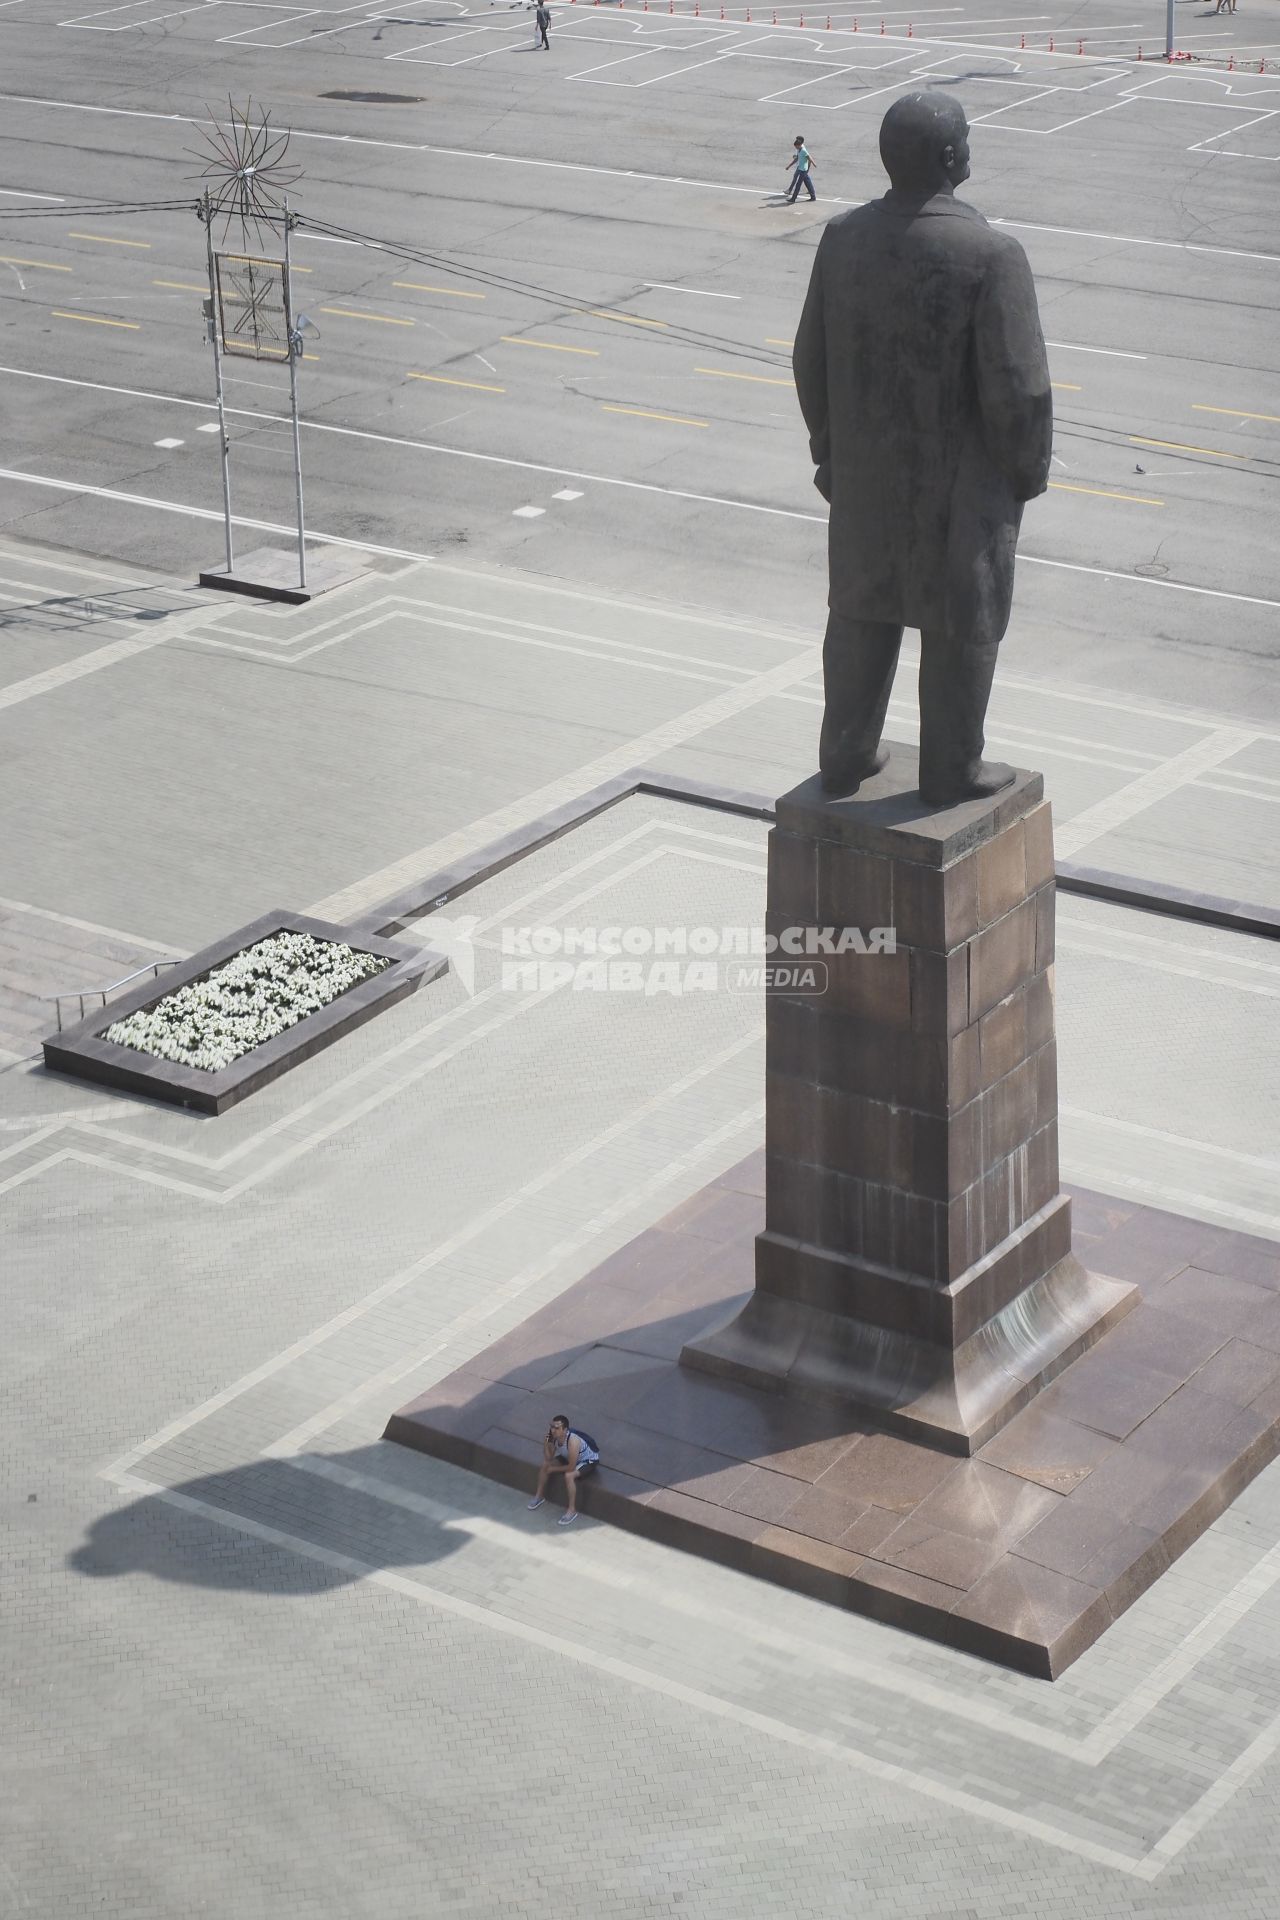 Тула. Мужчина сидит на постаменте в тени памятника Ленину.